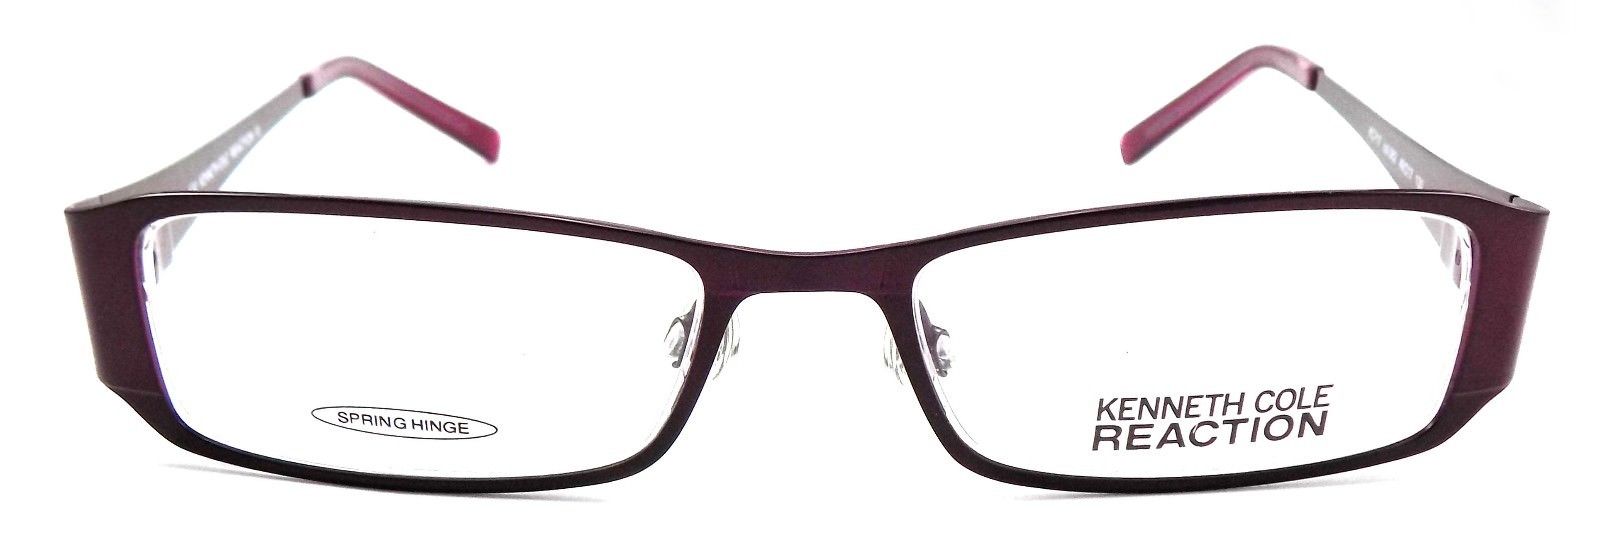 2-Kenneth Cole REACTION KC0717 082 Women's Eyeglasses 49-17-130 Violet + Case-726773164588-IKSpecs